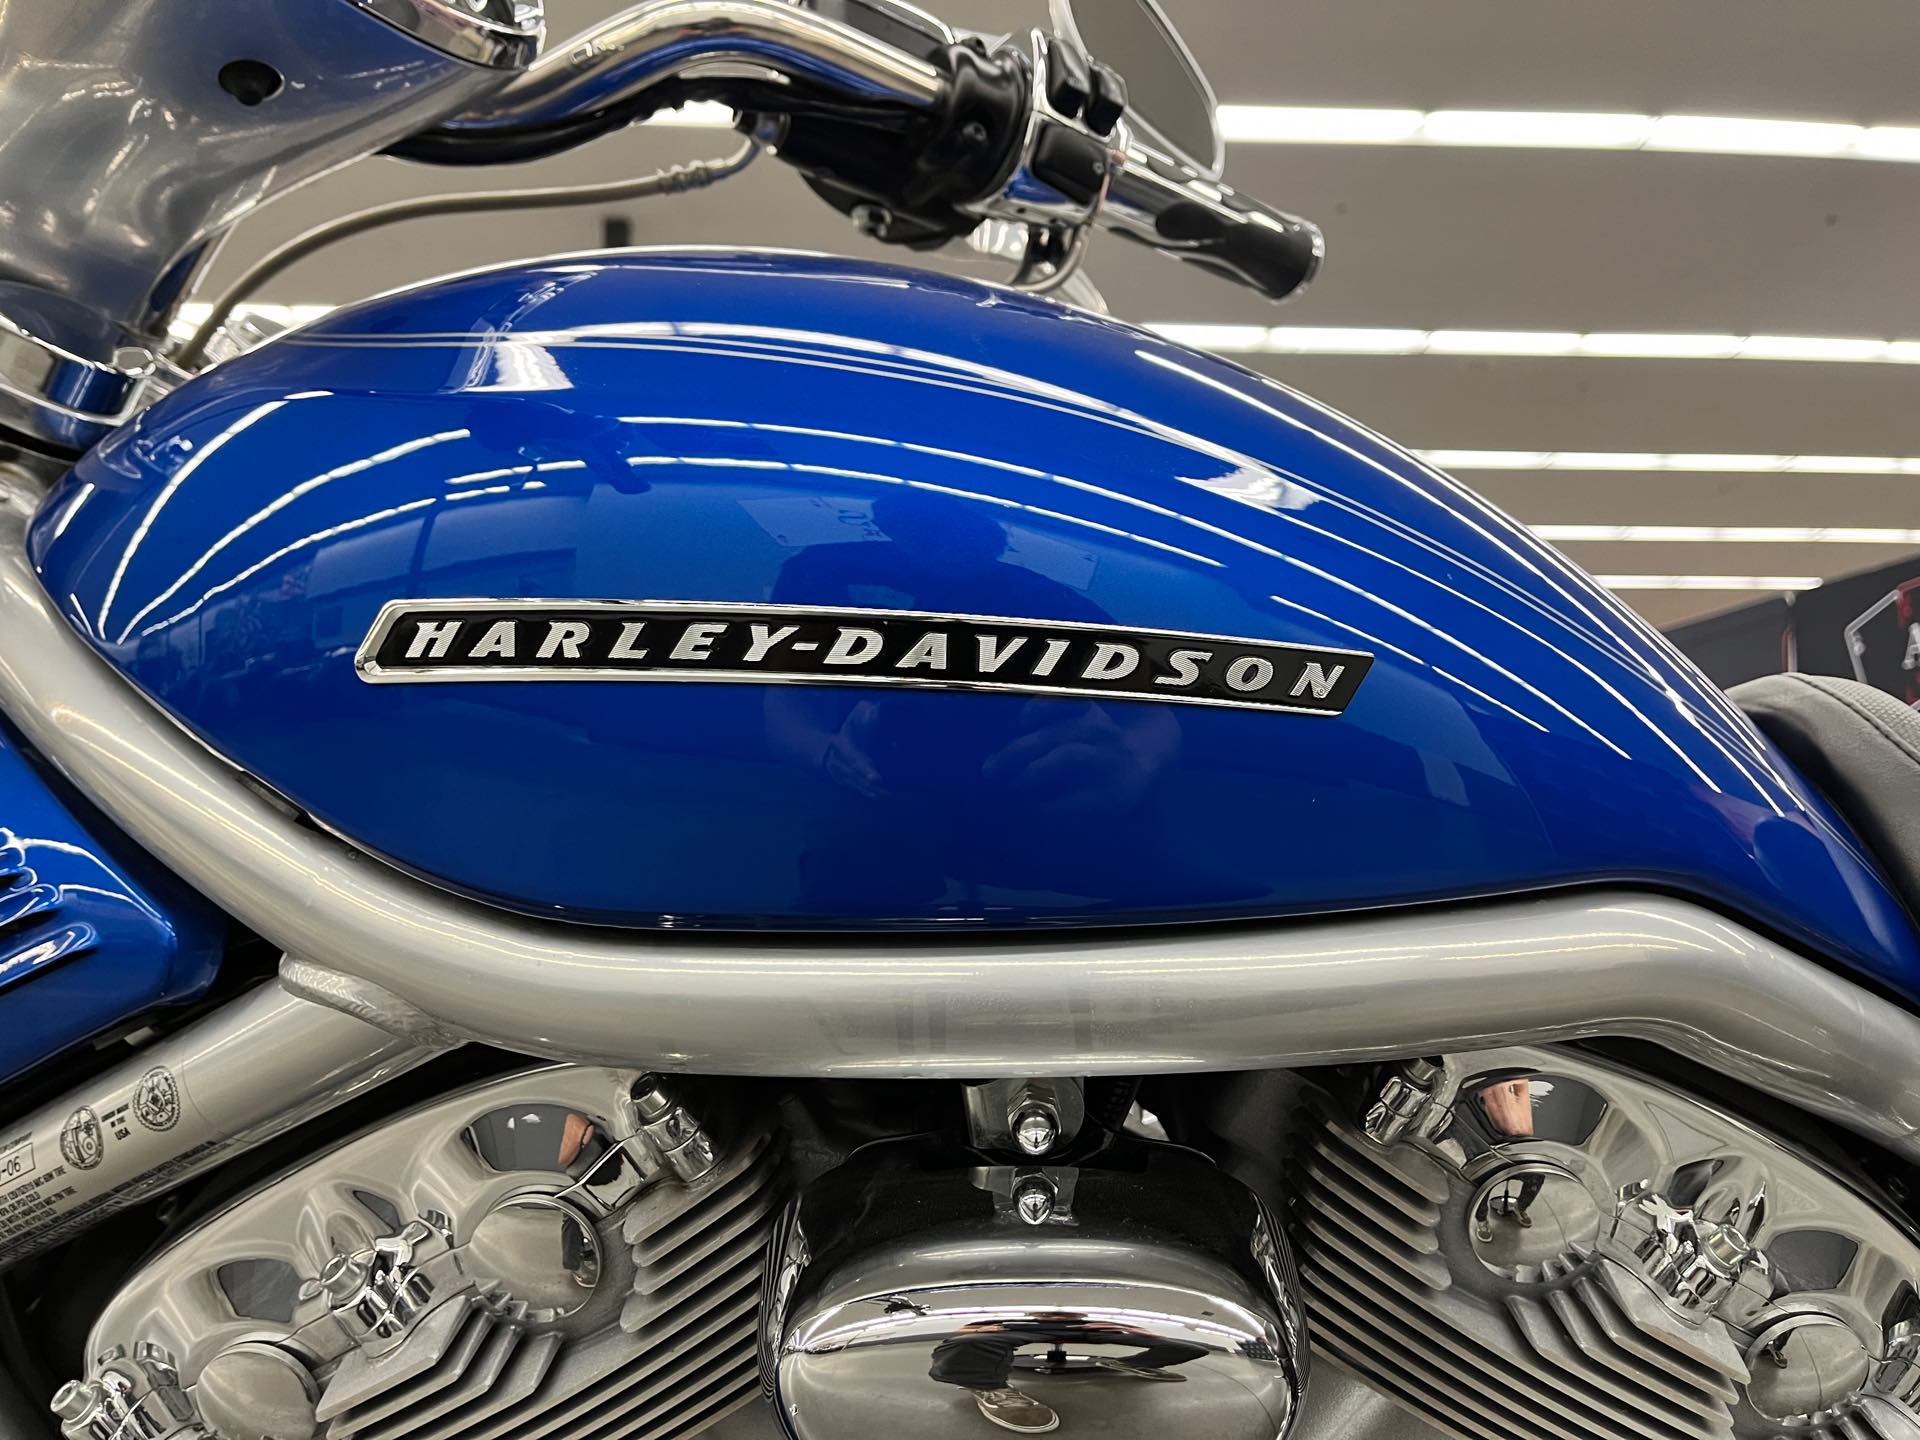 2007 Harley-Davidson VRSC A V-Rod at Aces Motorcycles - Denver